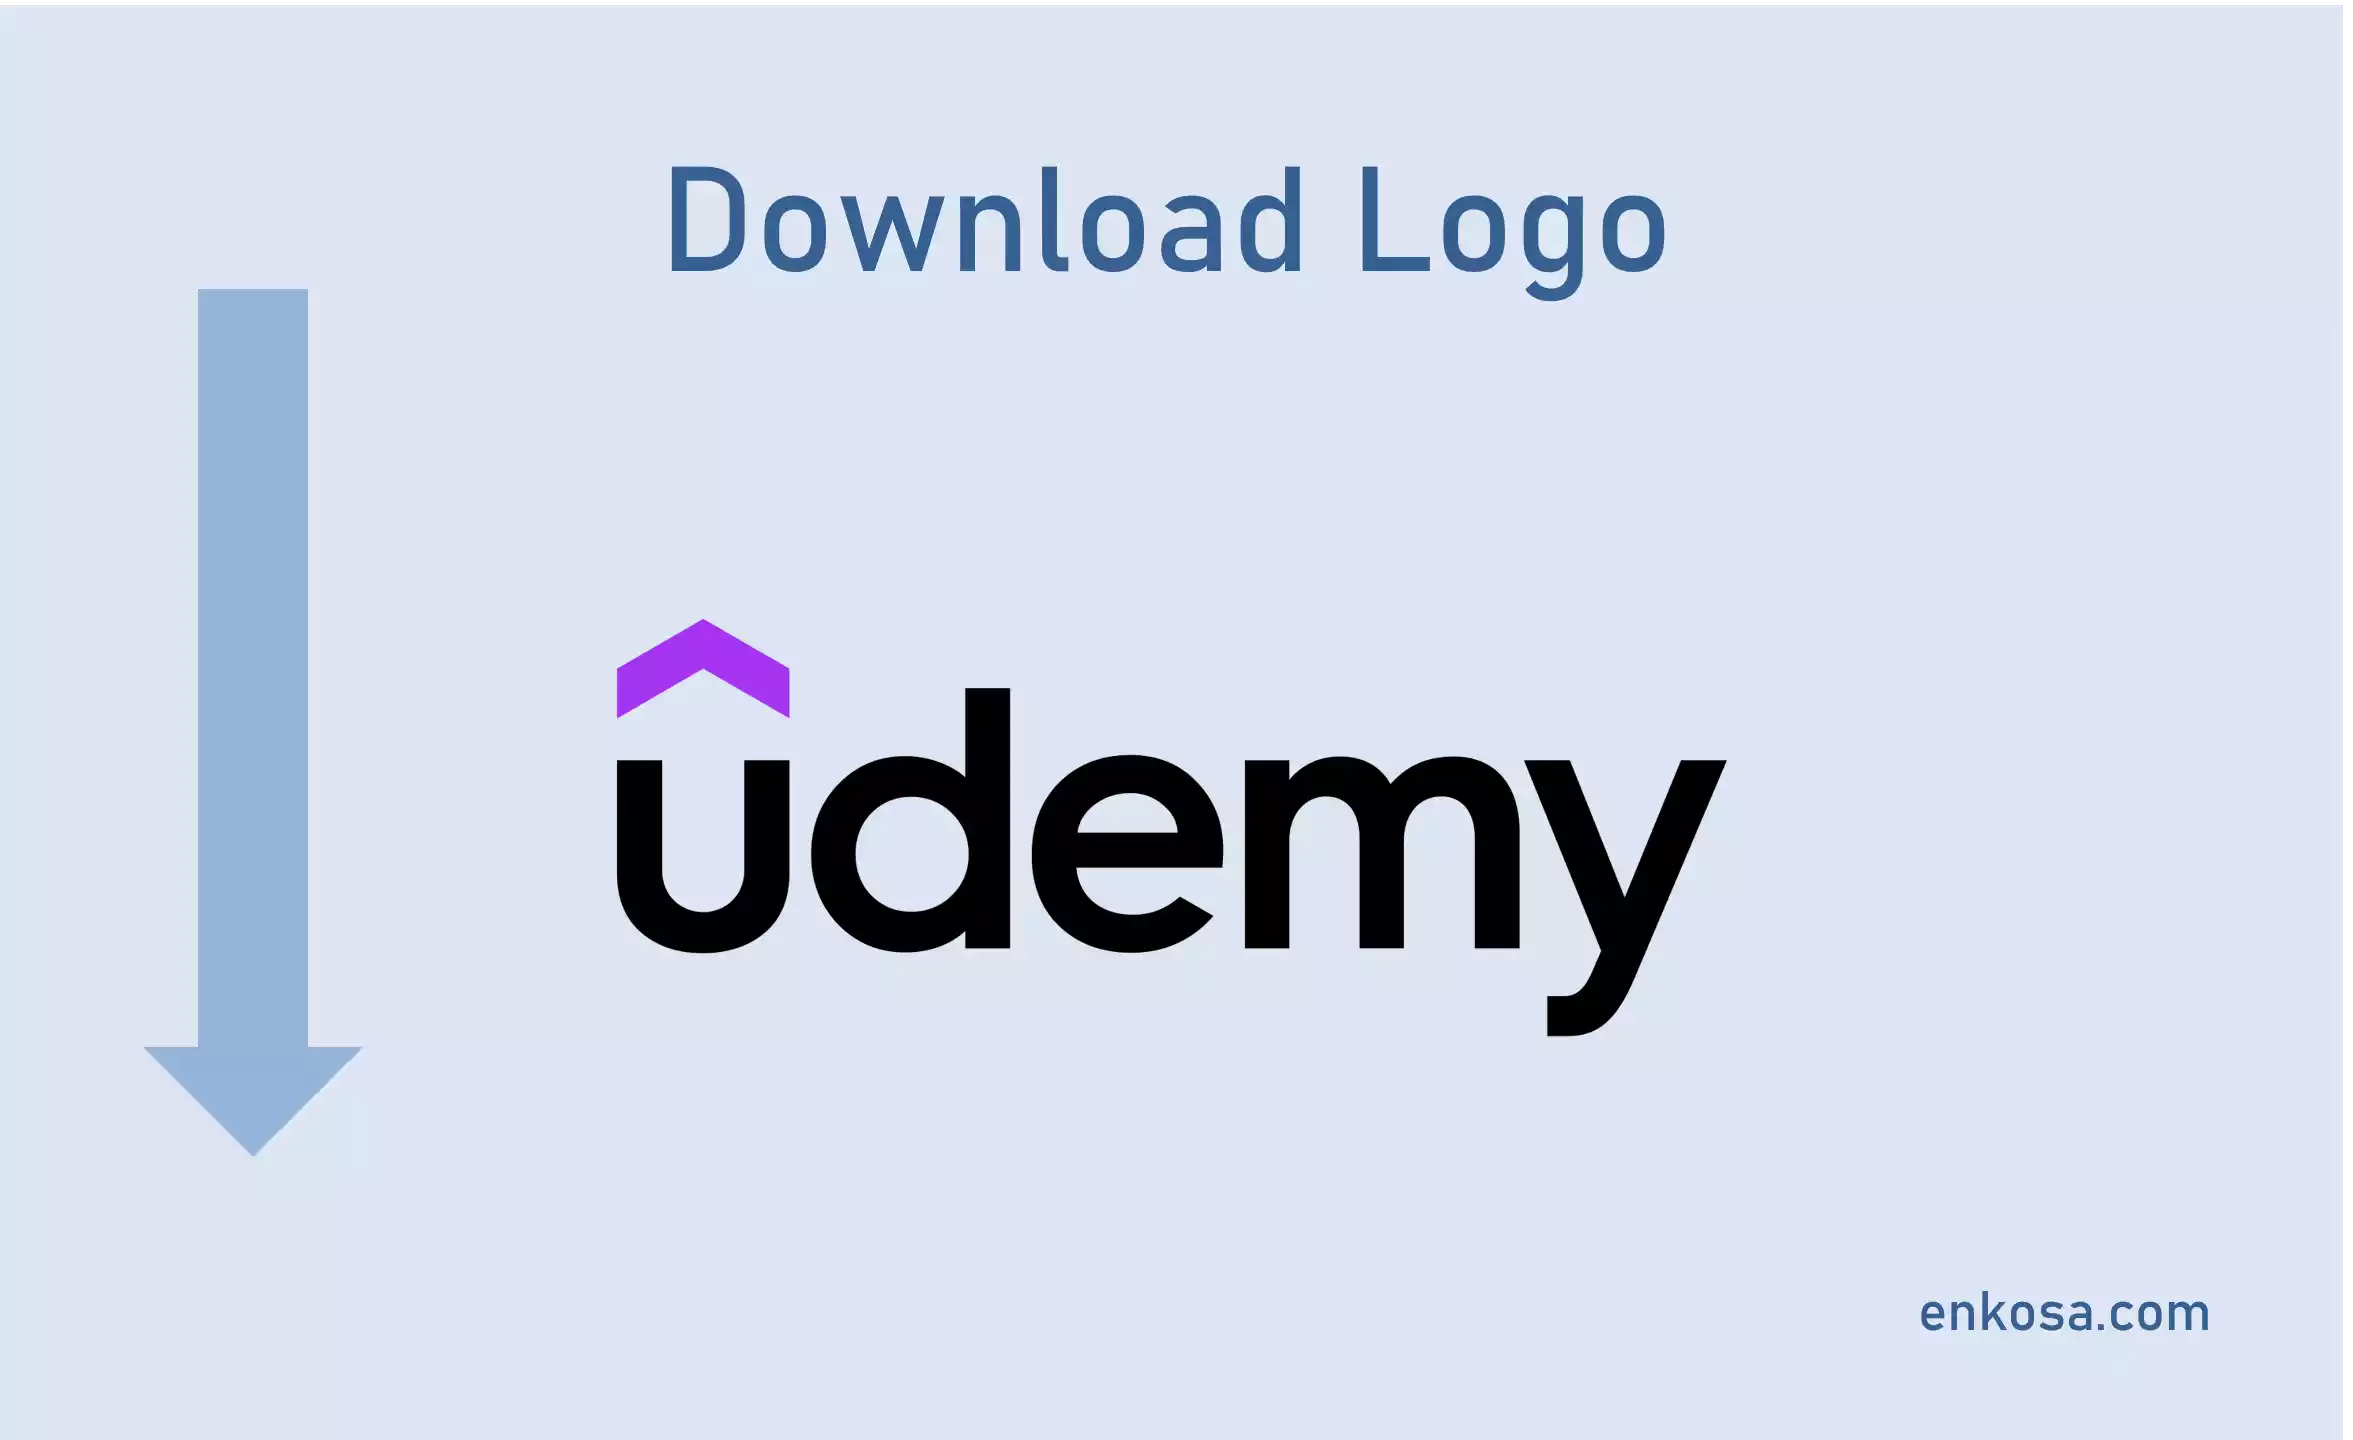 Download Logo Udemy PNG